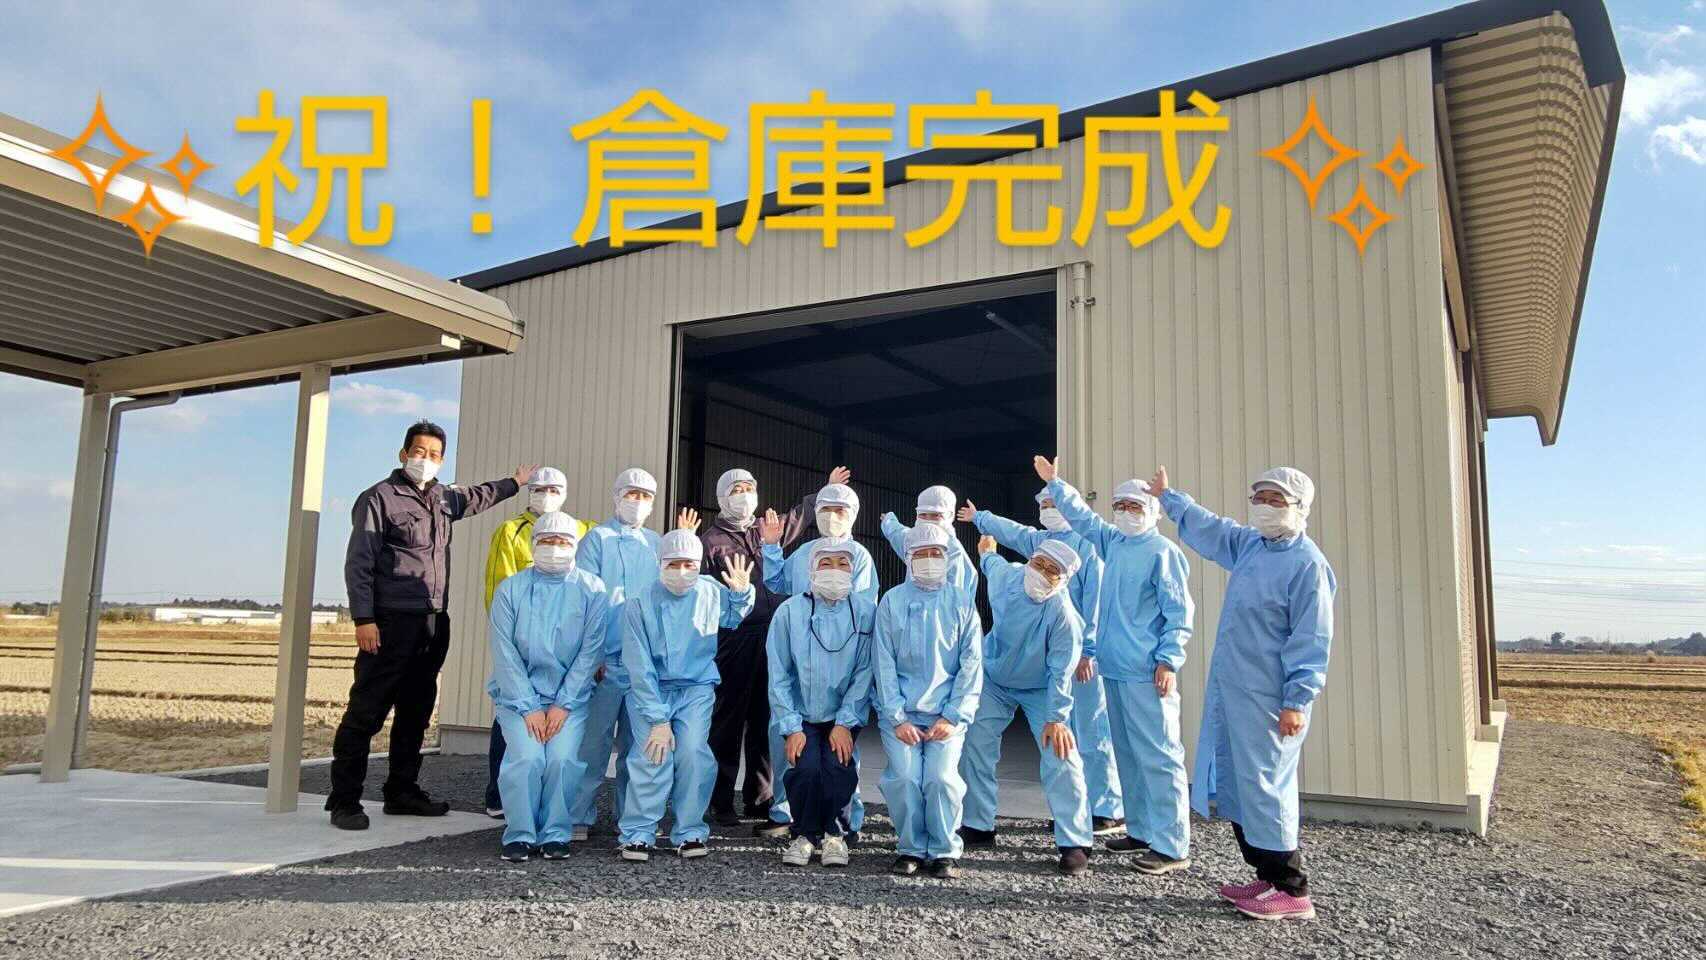 オフィス日光第二倉庫前で従業員が並んで撮影した写真